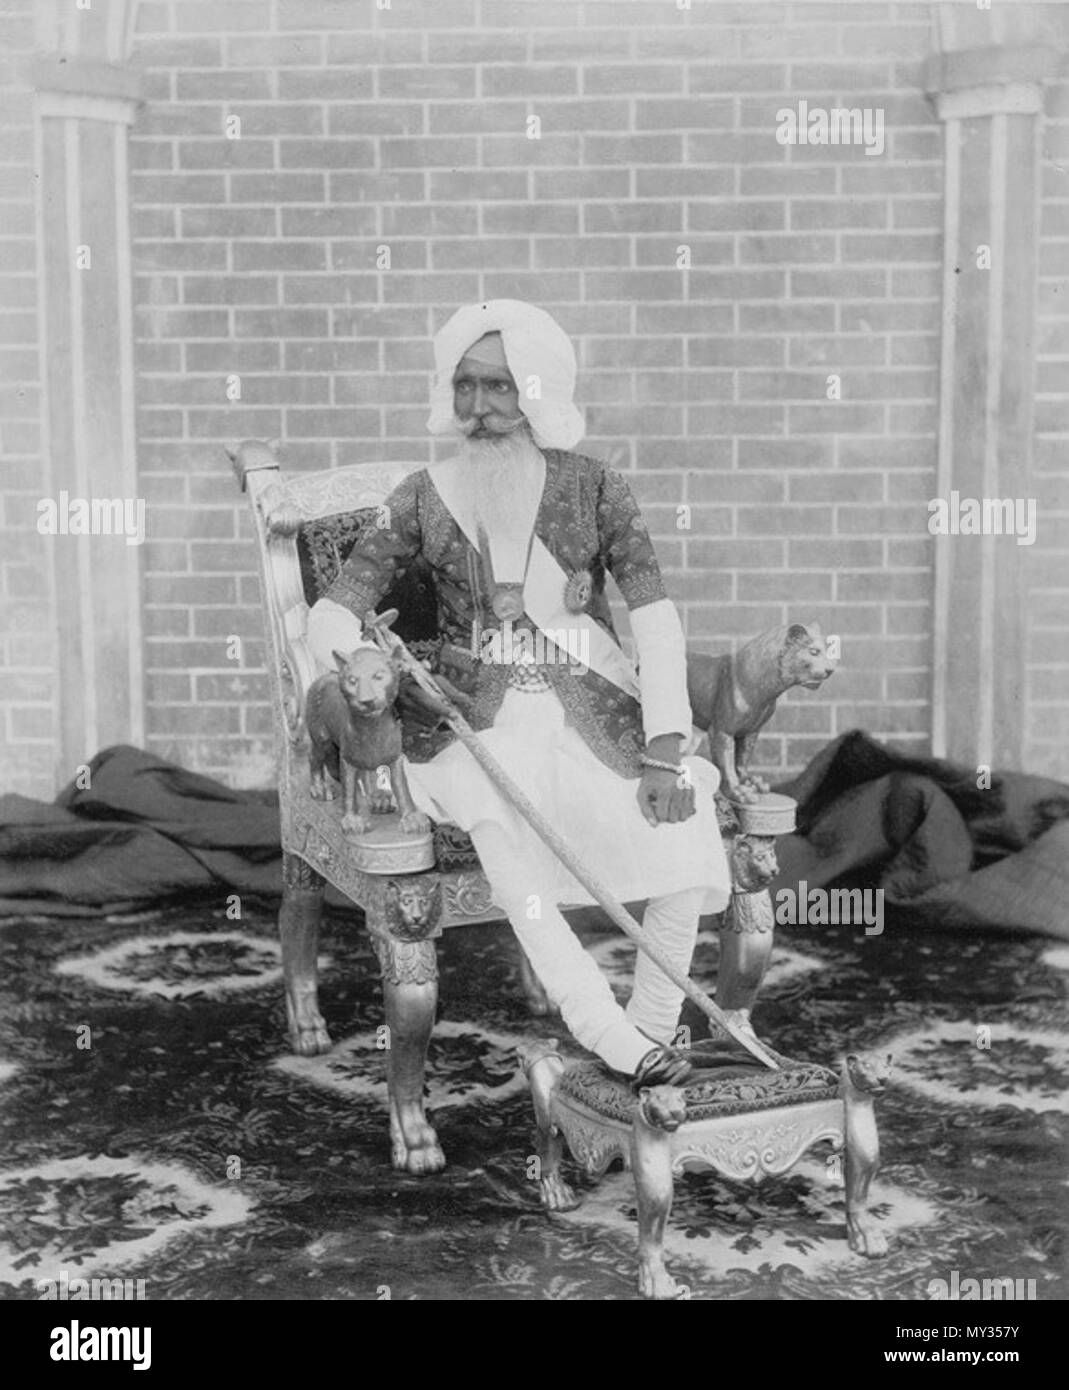 . Inglés: Fotografía de Sir Hira Singh, Raja de Nabha, tomada por un fotógrafo desconocido en la década de 1890. Este retrato de longitud completa muestra la raja sentado en un trono dorado con la pierna derecha levantada sobre un taburete. Se viste en Royal Regalia incluyendo medallas y sosteniendo una espada joyas incrustadas. Los brazos del trono están formadas por leones tallados. La Raja (1843-1911) gobernó el estado principesco de Nabha en Punjab desde 1871 hasta su muerte. Un sikh, fue miembro de la dinastía Phulkian Sidhu descendiente de los jat. Familias de la dinastía gobernó Patiala, Jind, Nabha, Bahadur y otros Punjab Foto de stock